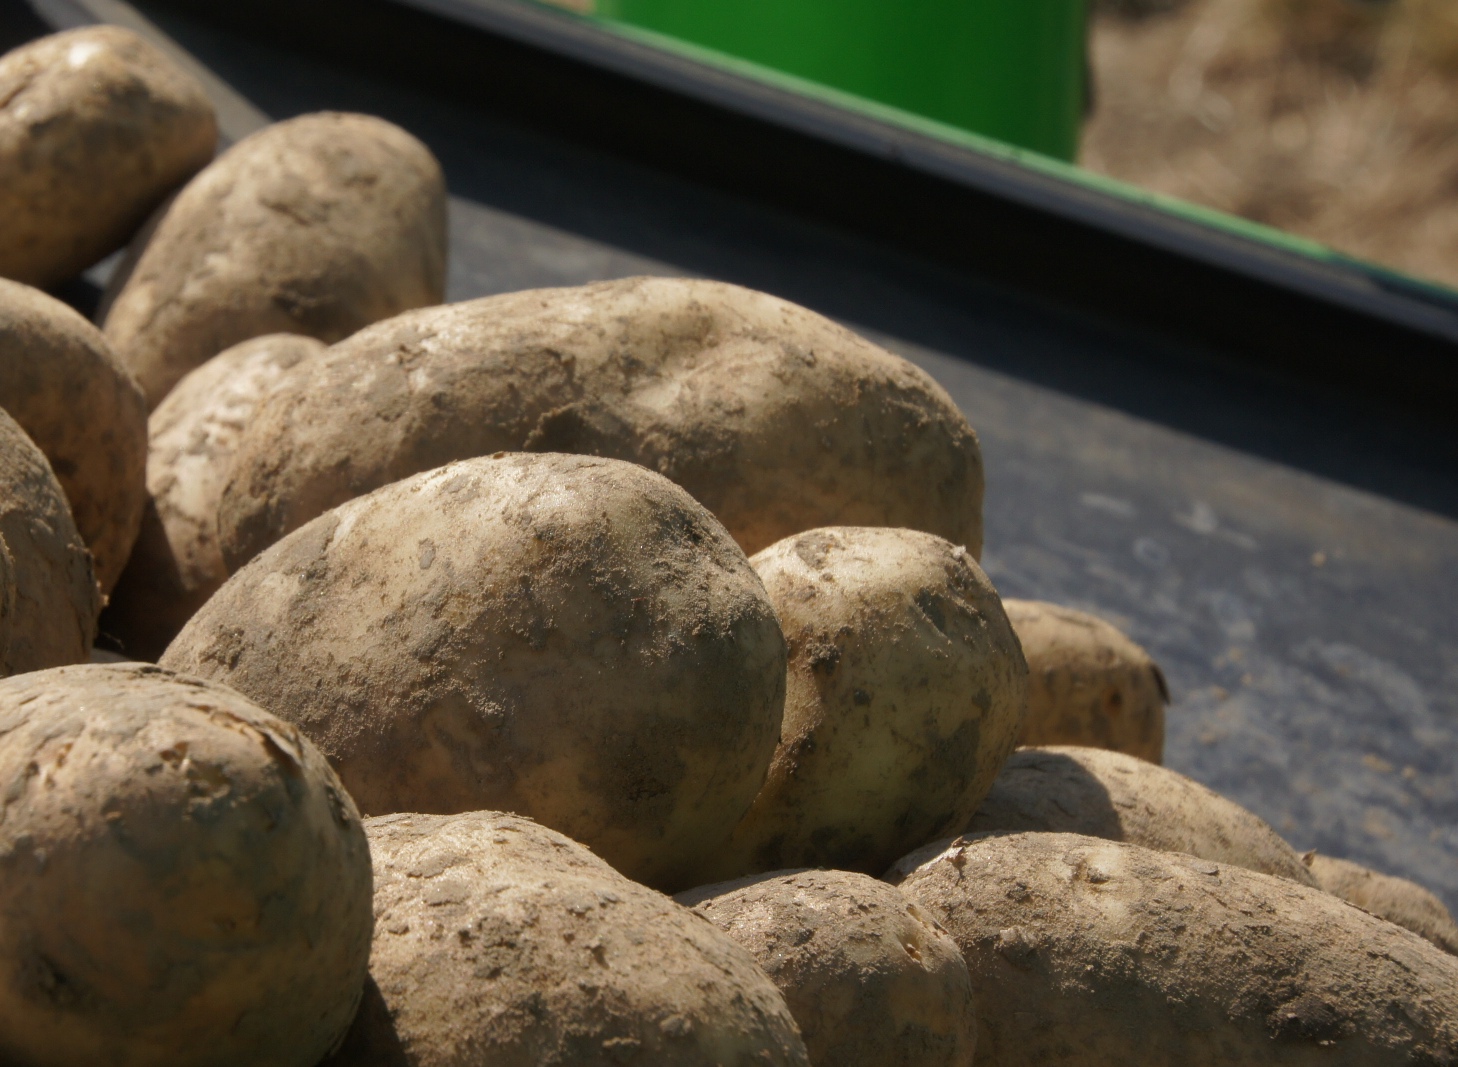 Zorgen over AM en wratziekte bij aardappeltelers